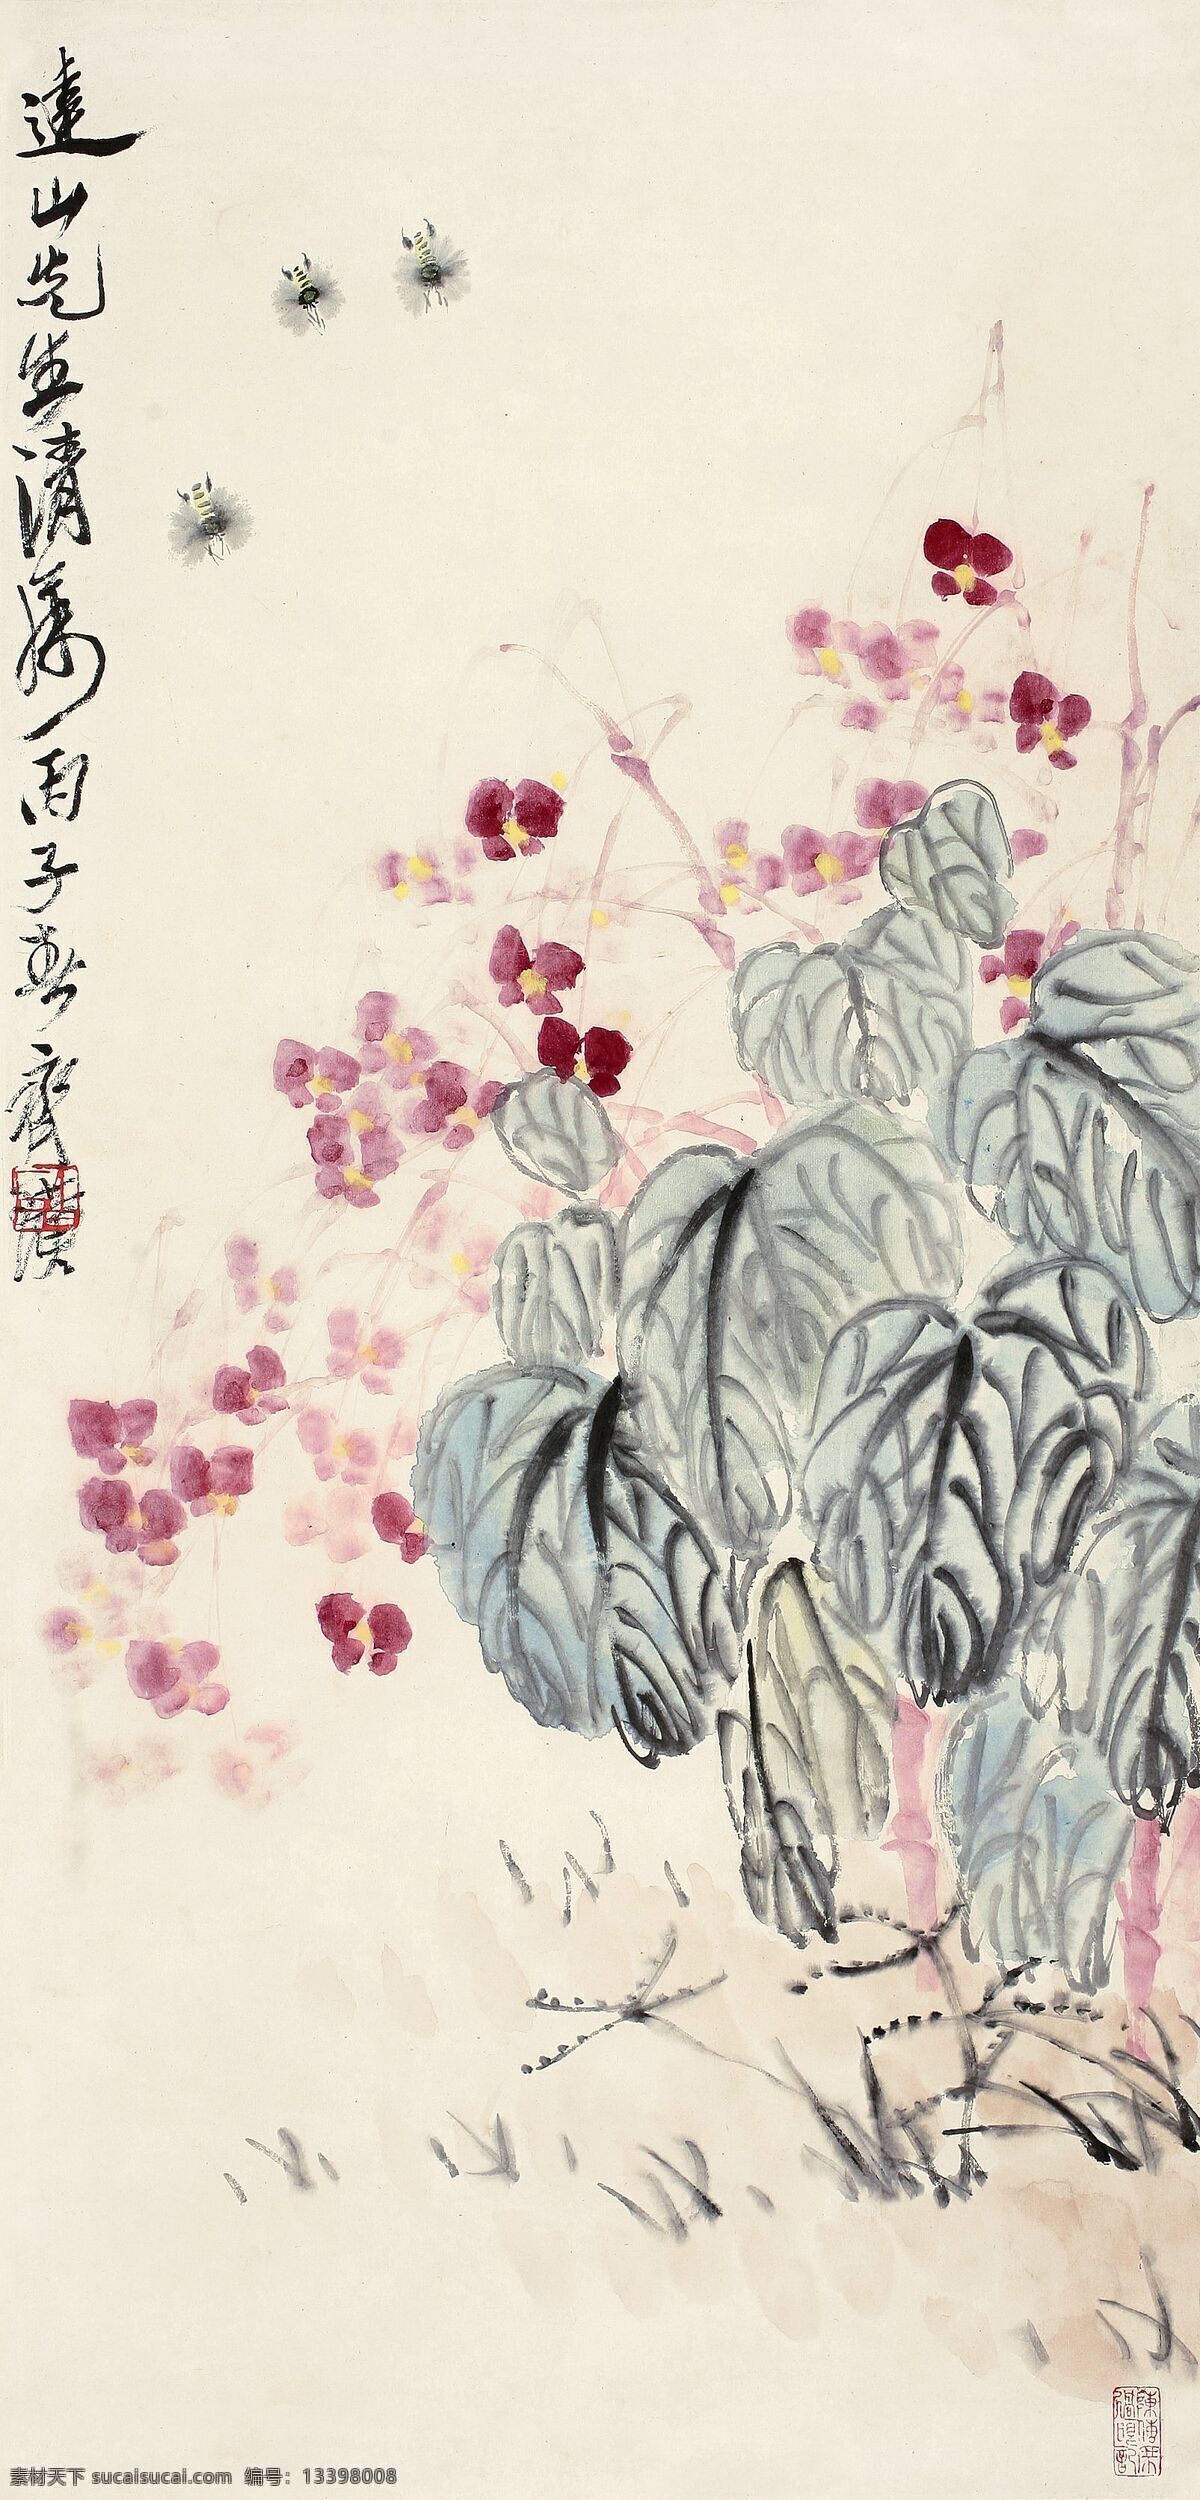 静物花卉 齐白石作品 蜜蜂 春天 采蜜 中国古代画 中国古画 文化艺术 绘画书法